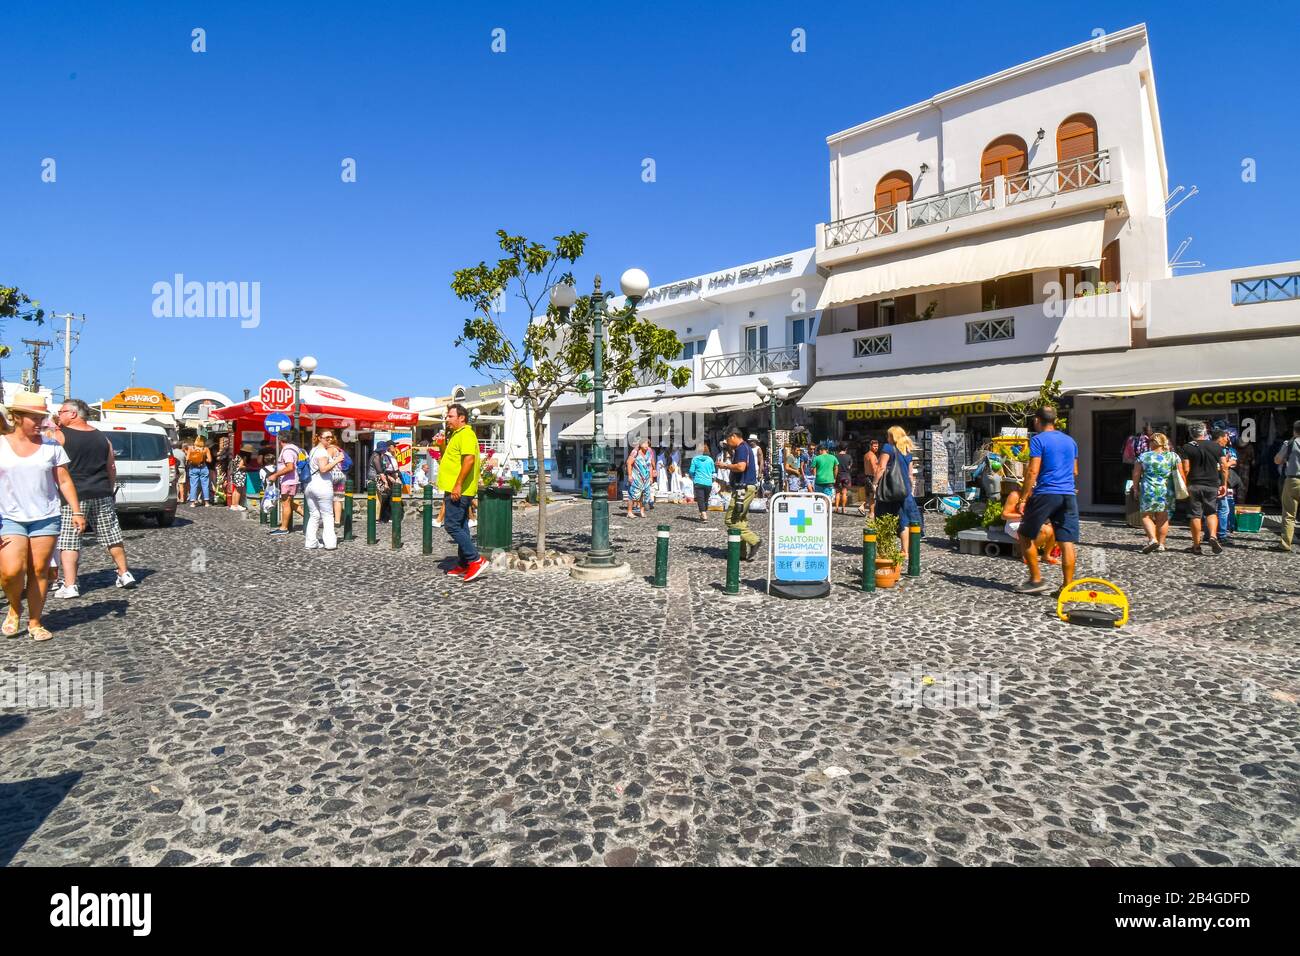 Touristen genießen einen Sommertag in den Geschäften und Cafés im touristischen Dorf Fira Town auf der Insel Santorini, Griechenland. Stockfoto